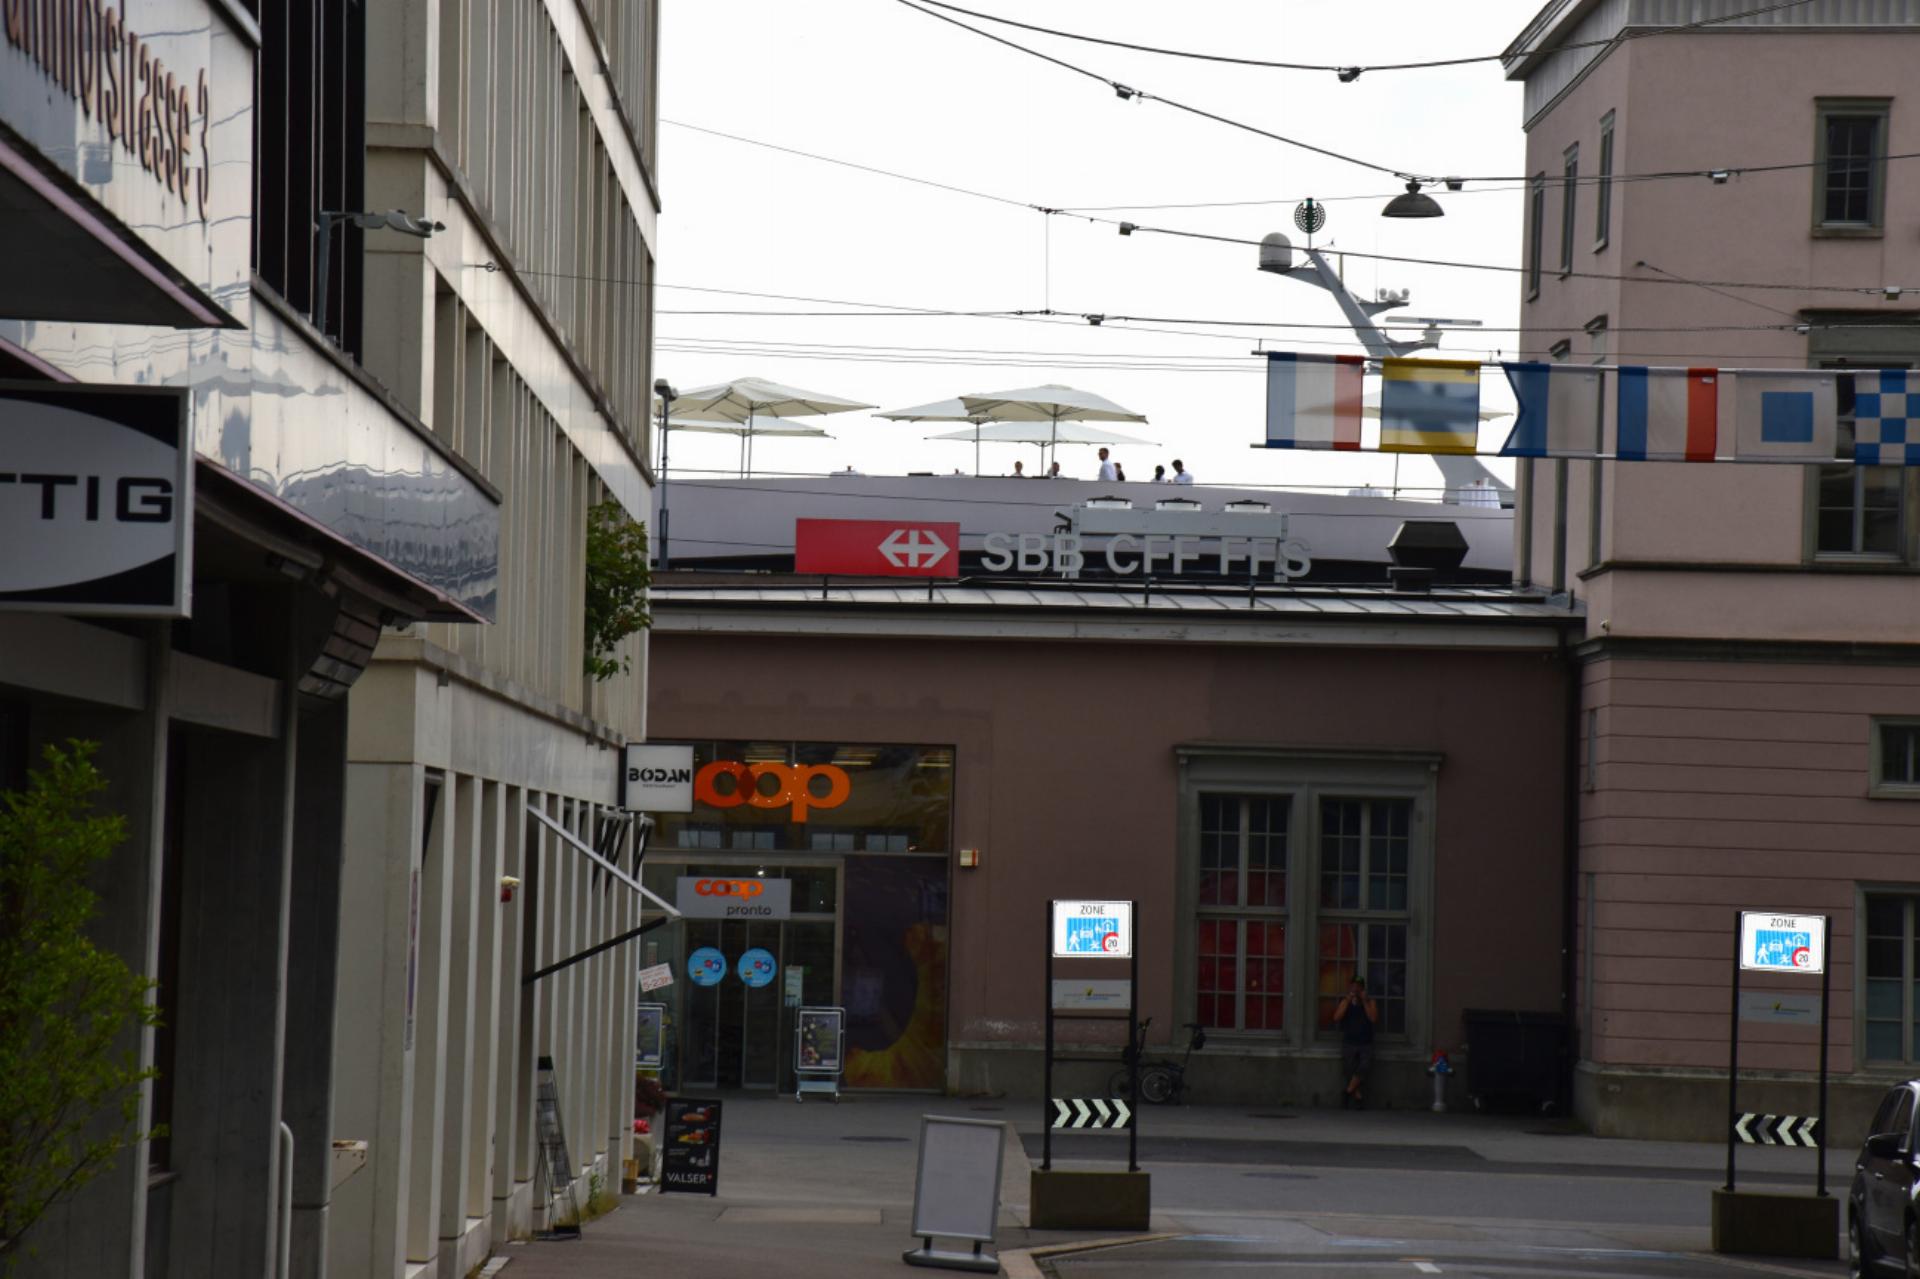 Ein Terrassenrestaurant auf dem Bahnhofsgebäude?